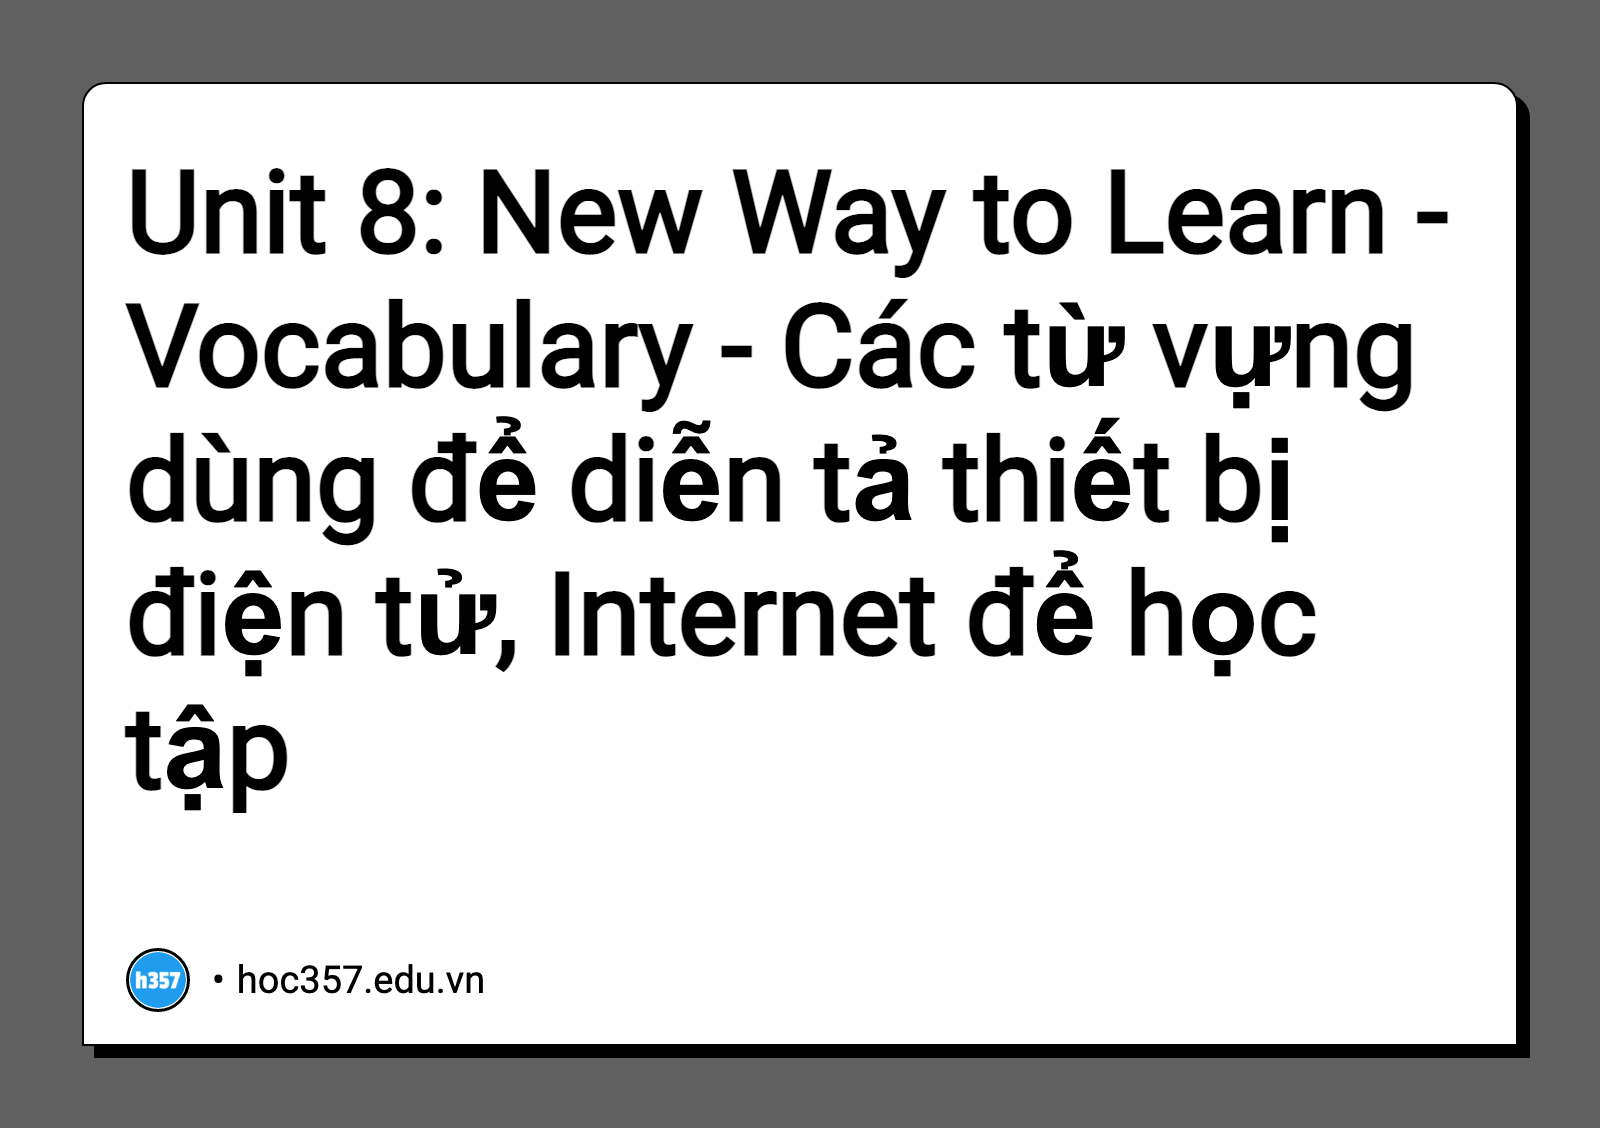 Hình minh họa Unit 8: New Way to Learn - Vocabulary - Các từ vựng dùng để diễn tả thiết bị điện tử, Internet để học tập